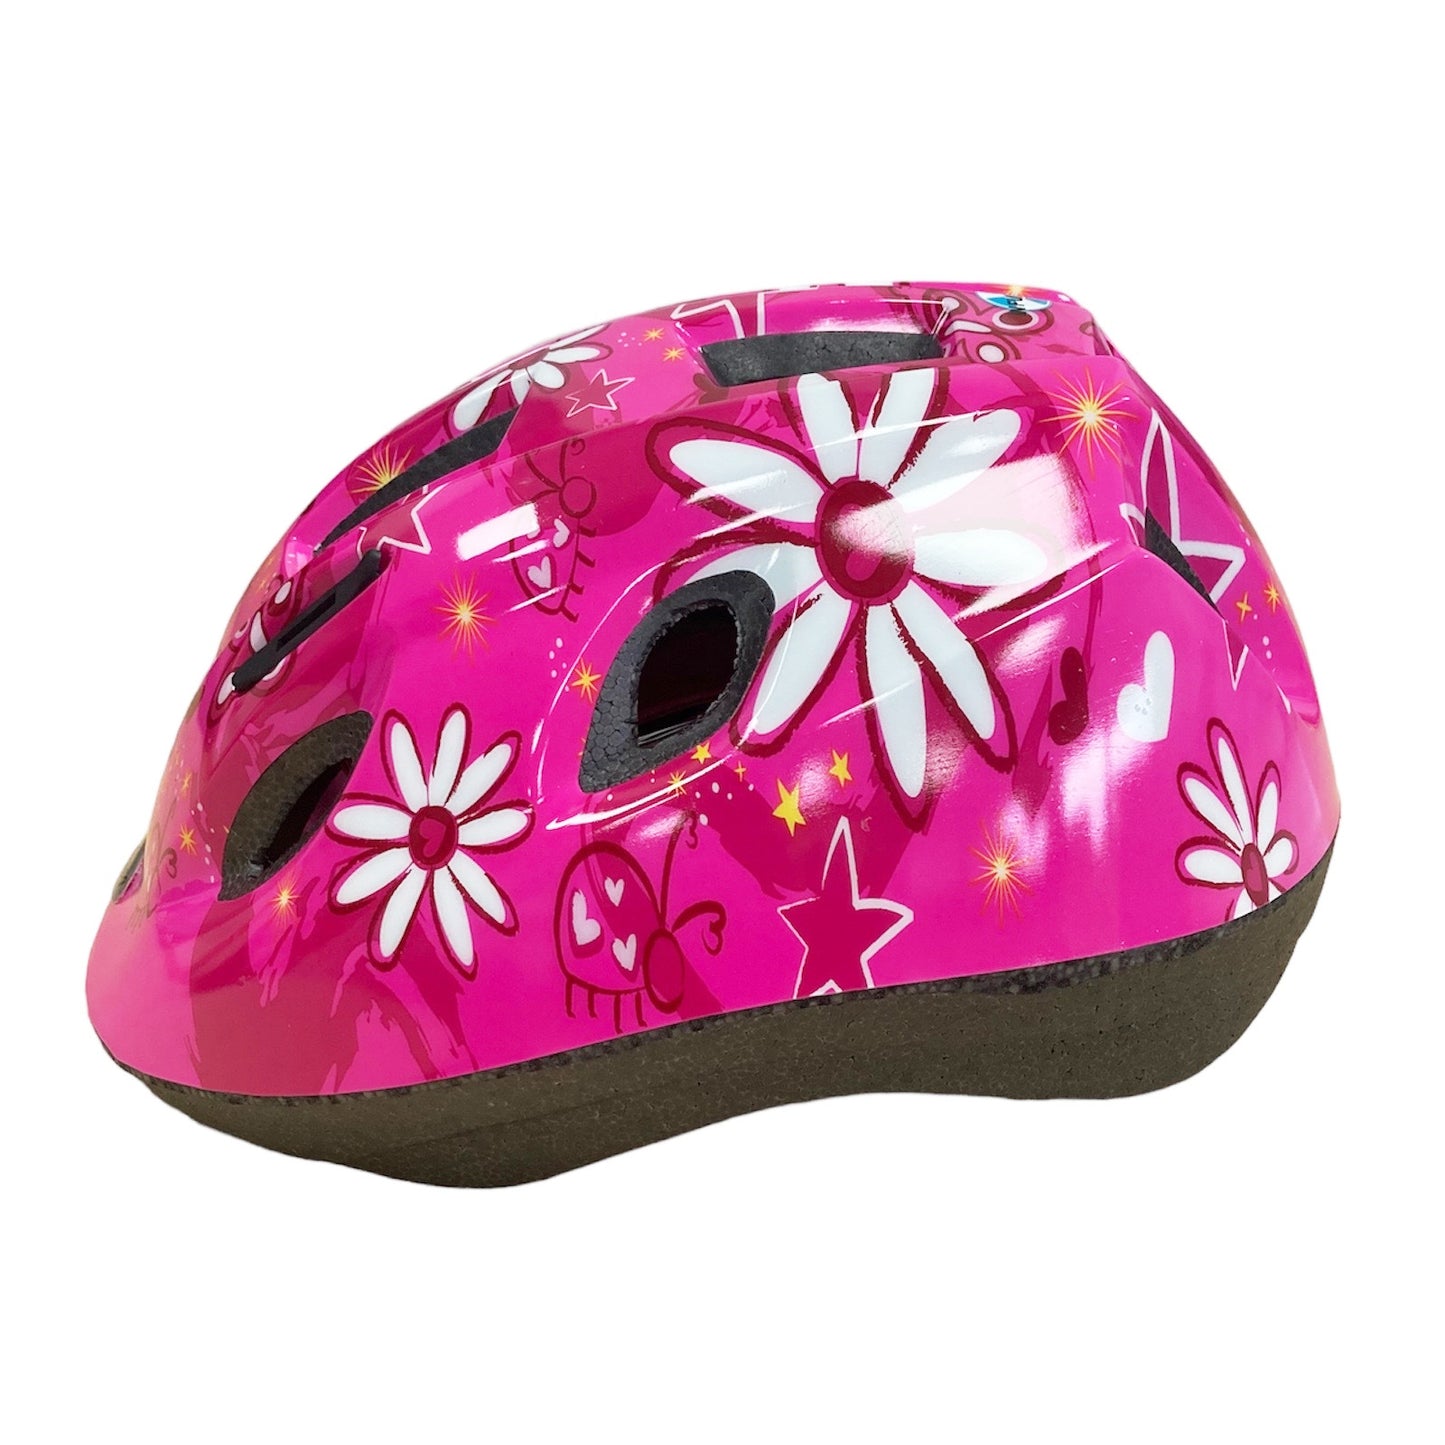 Raleigh Mystery Pink Flowers Kid's Cycling Helmet 48-54cm Alternate 3